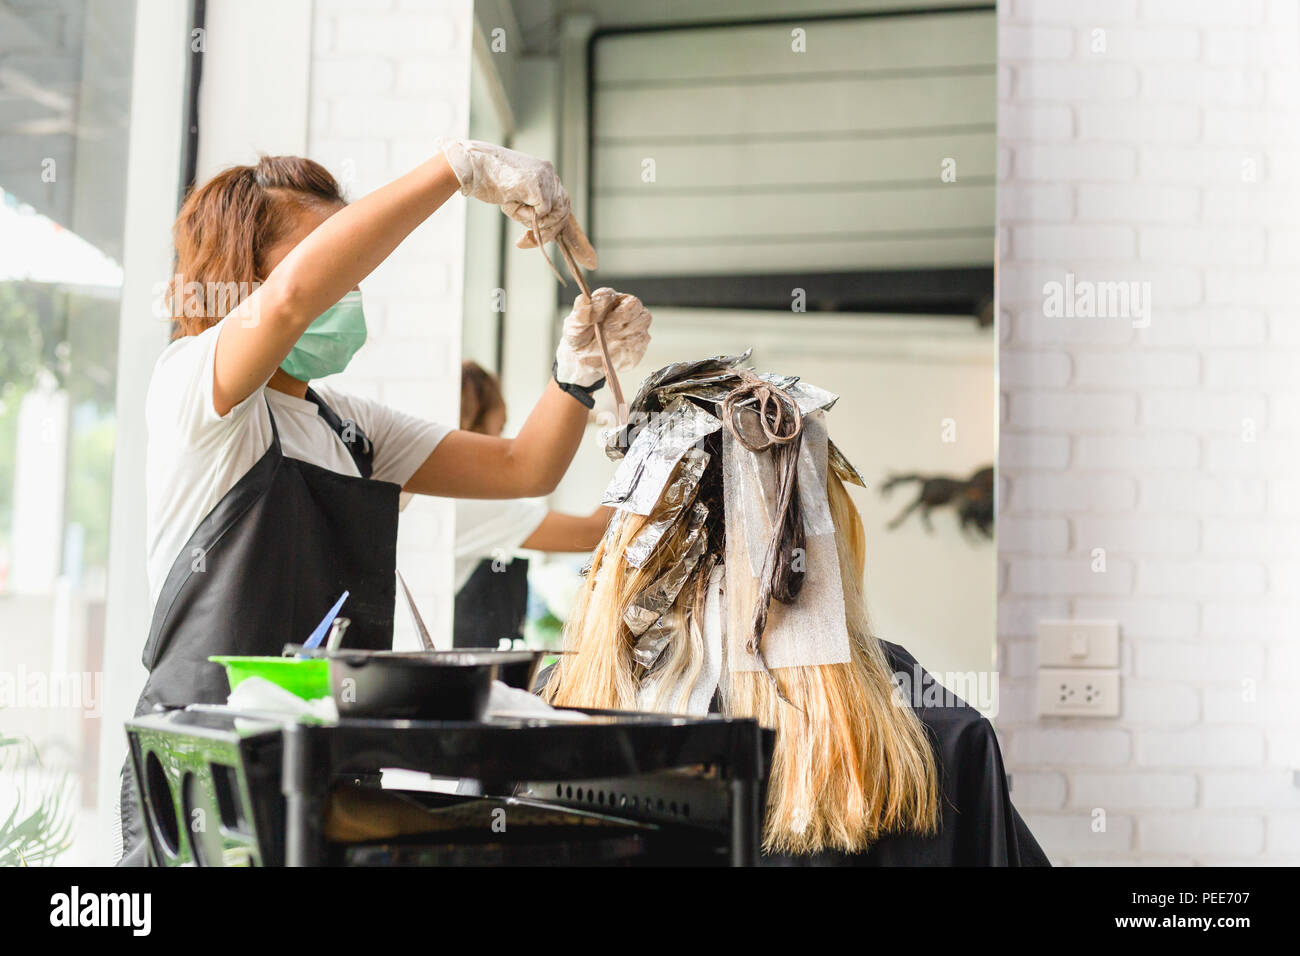 Friseur ist Sterben weibliche Haar mit Folie in Salon Stockfotografie -  Alamy